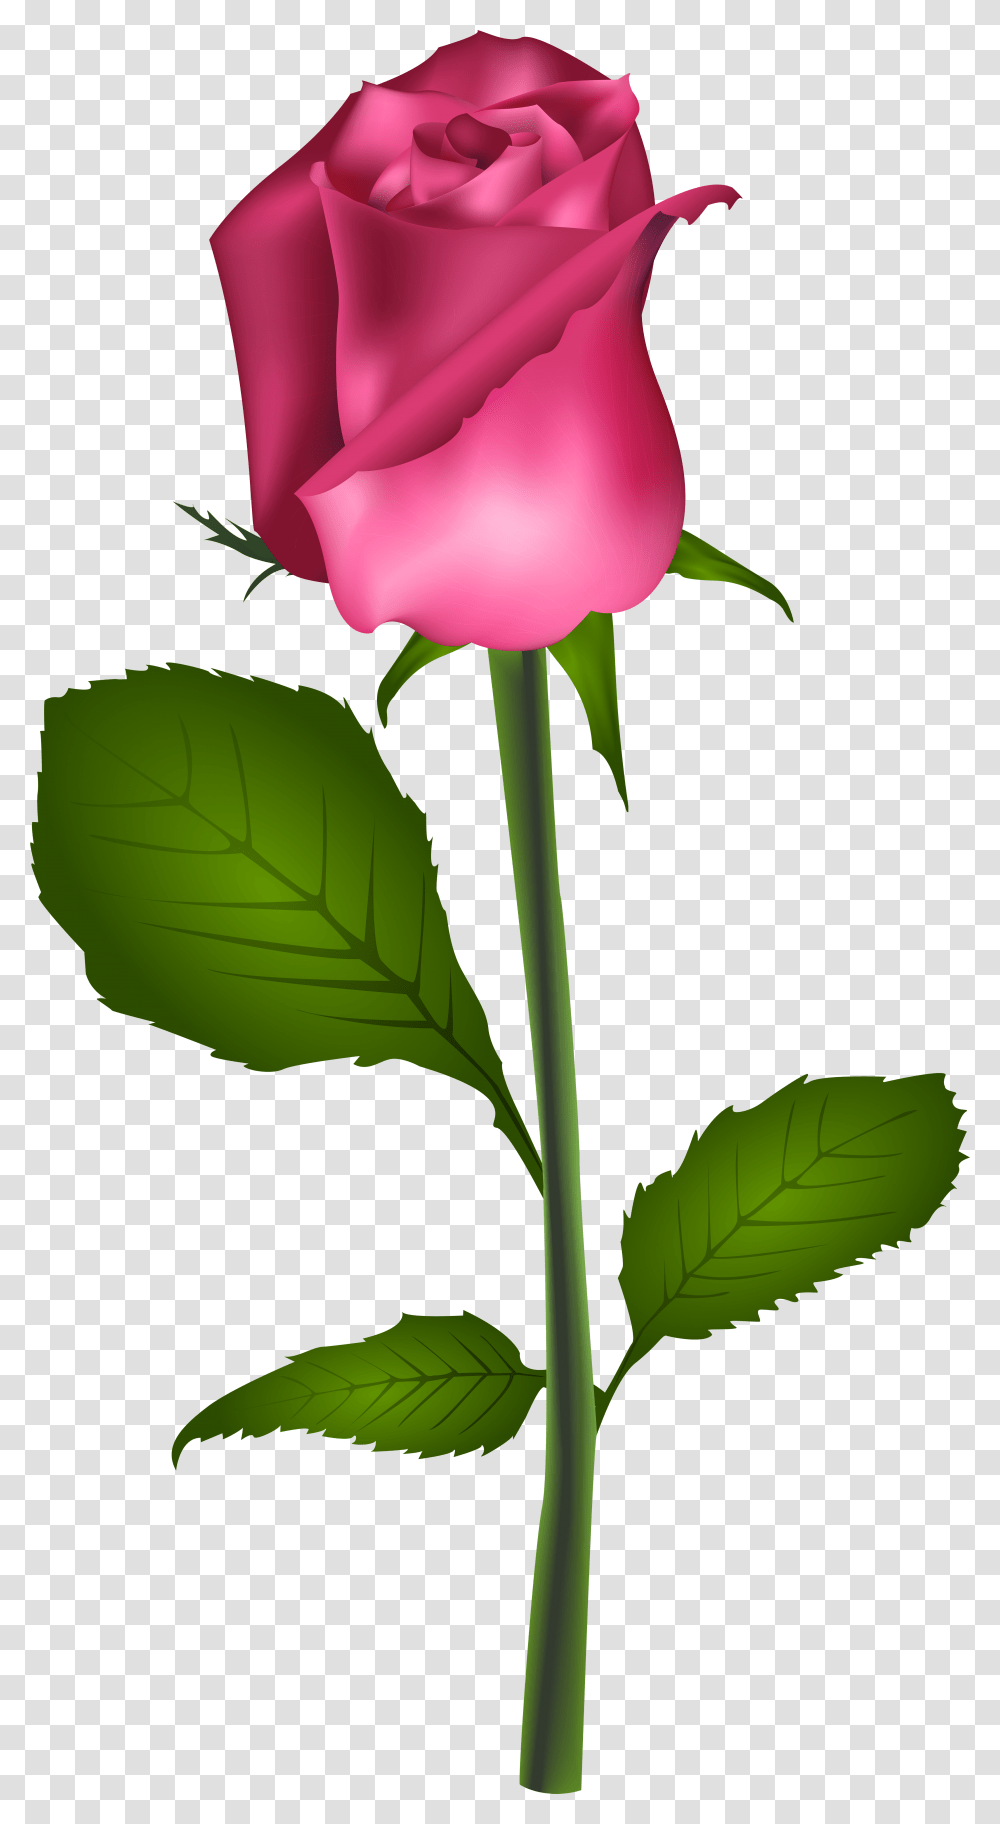 Rose Red Flower Clip Art Pink Rose Clip Art Best Roseflower, Plant, Blossom, Petal, Leaf Transparent Png